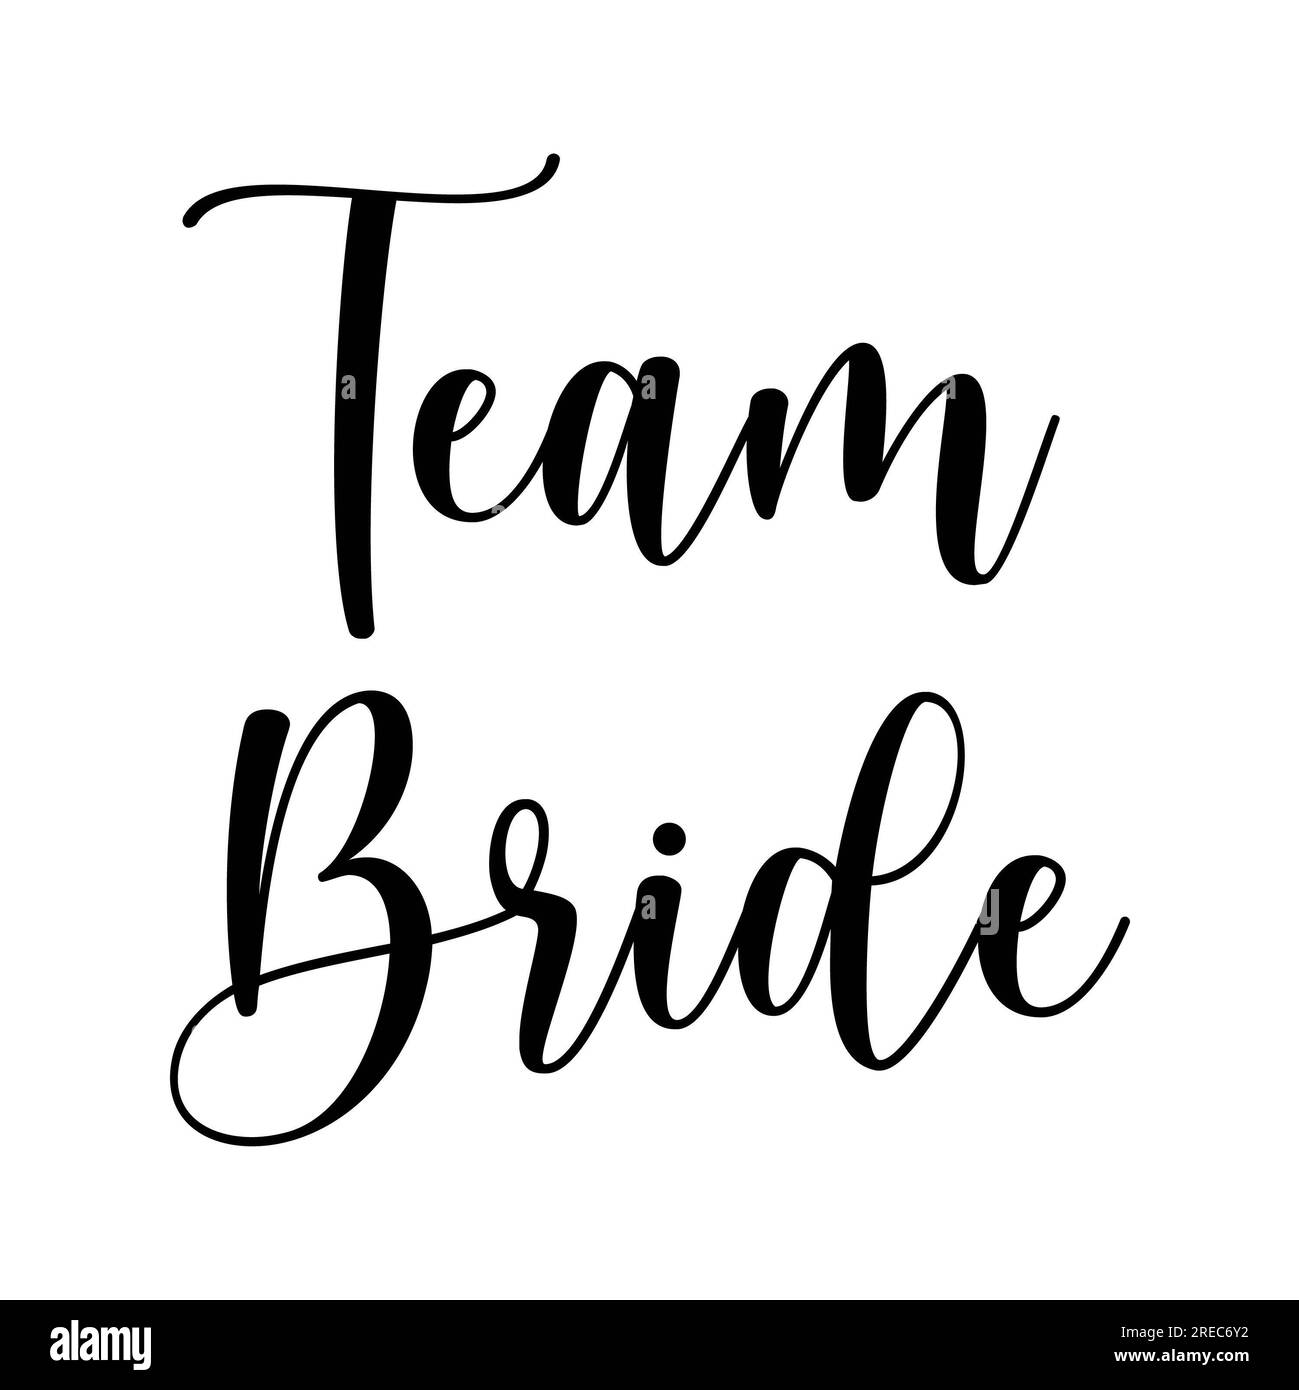 Team Bride on white background. Isolated illustration Stock Photo - Alamy